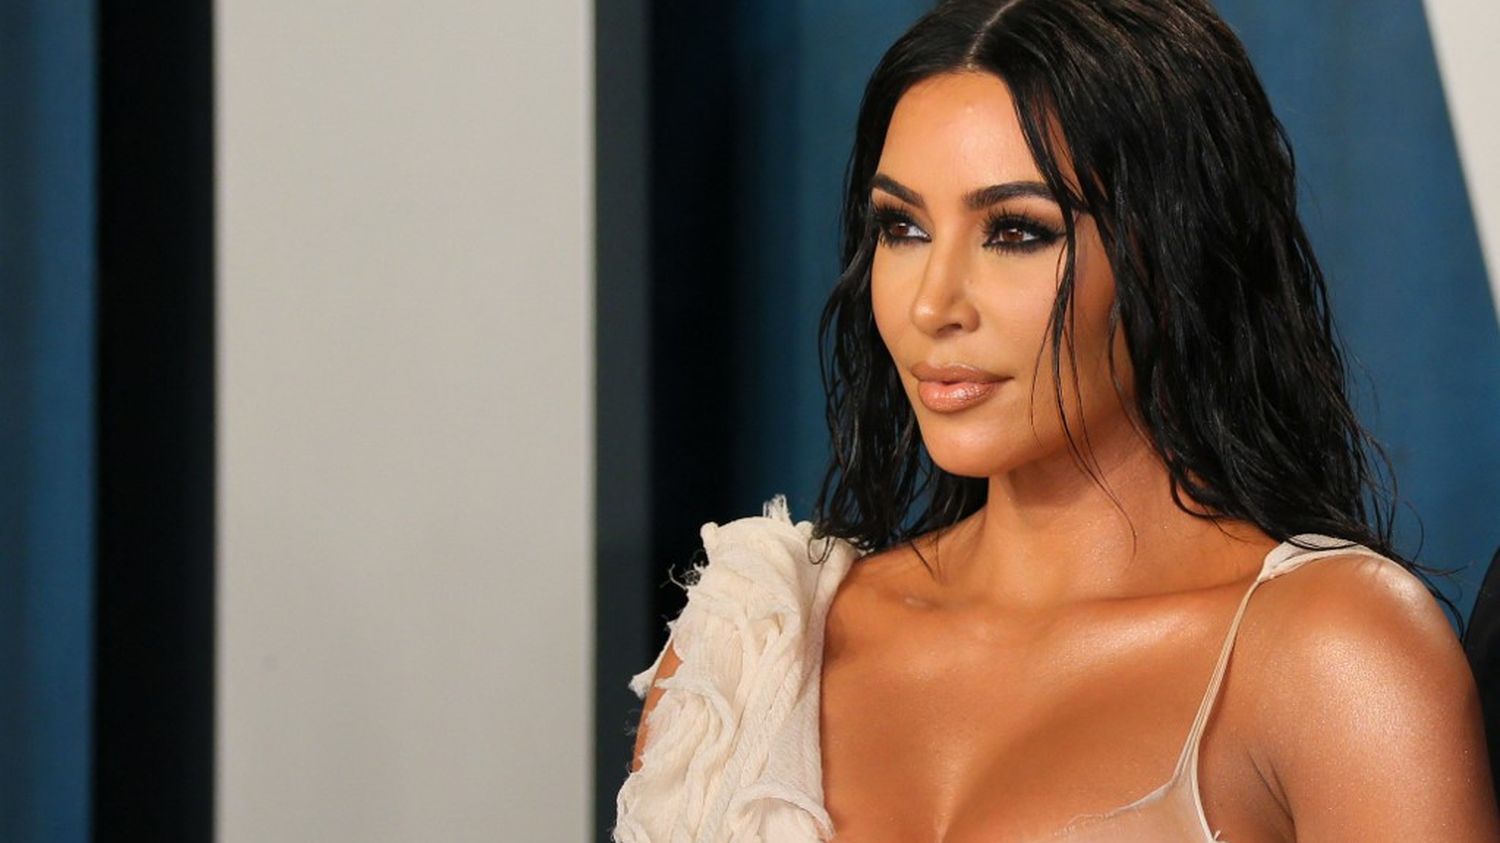 La star américaine Kim Kardashian écope d'une amende de 1,26 million d'euros pour avoir frauduleusement promu une cryptomonnaie - franceinfo